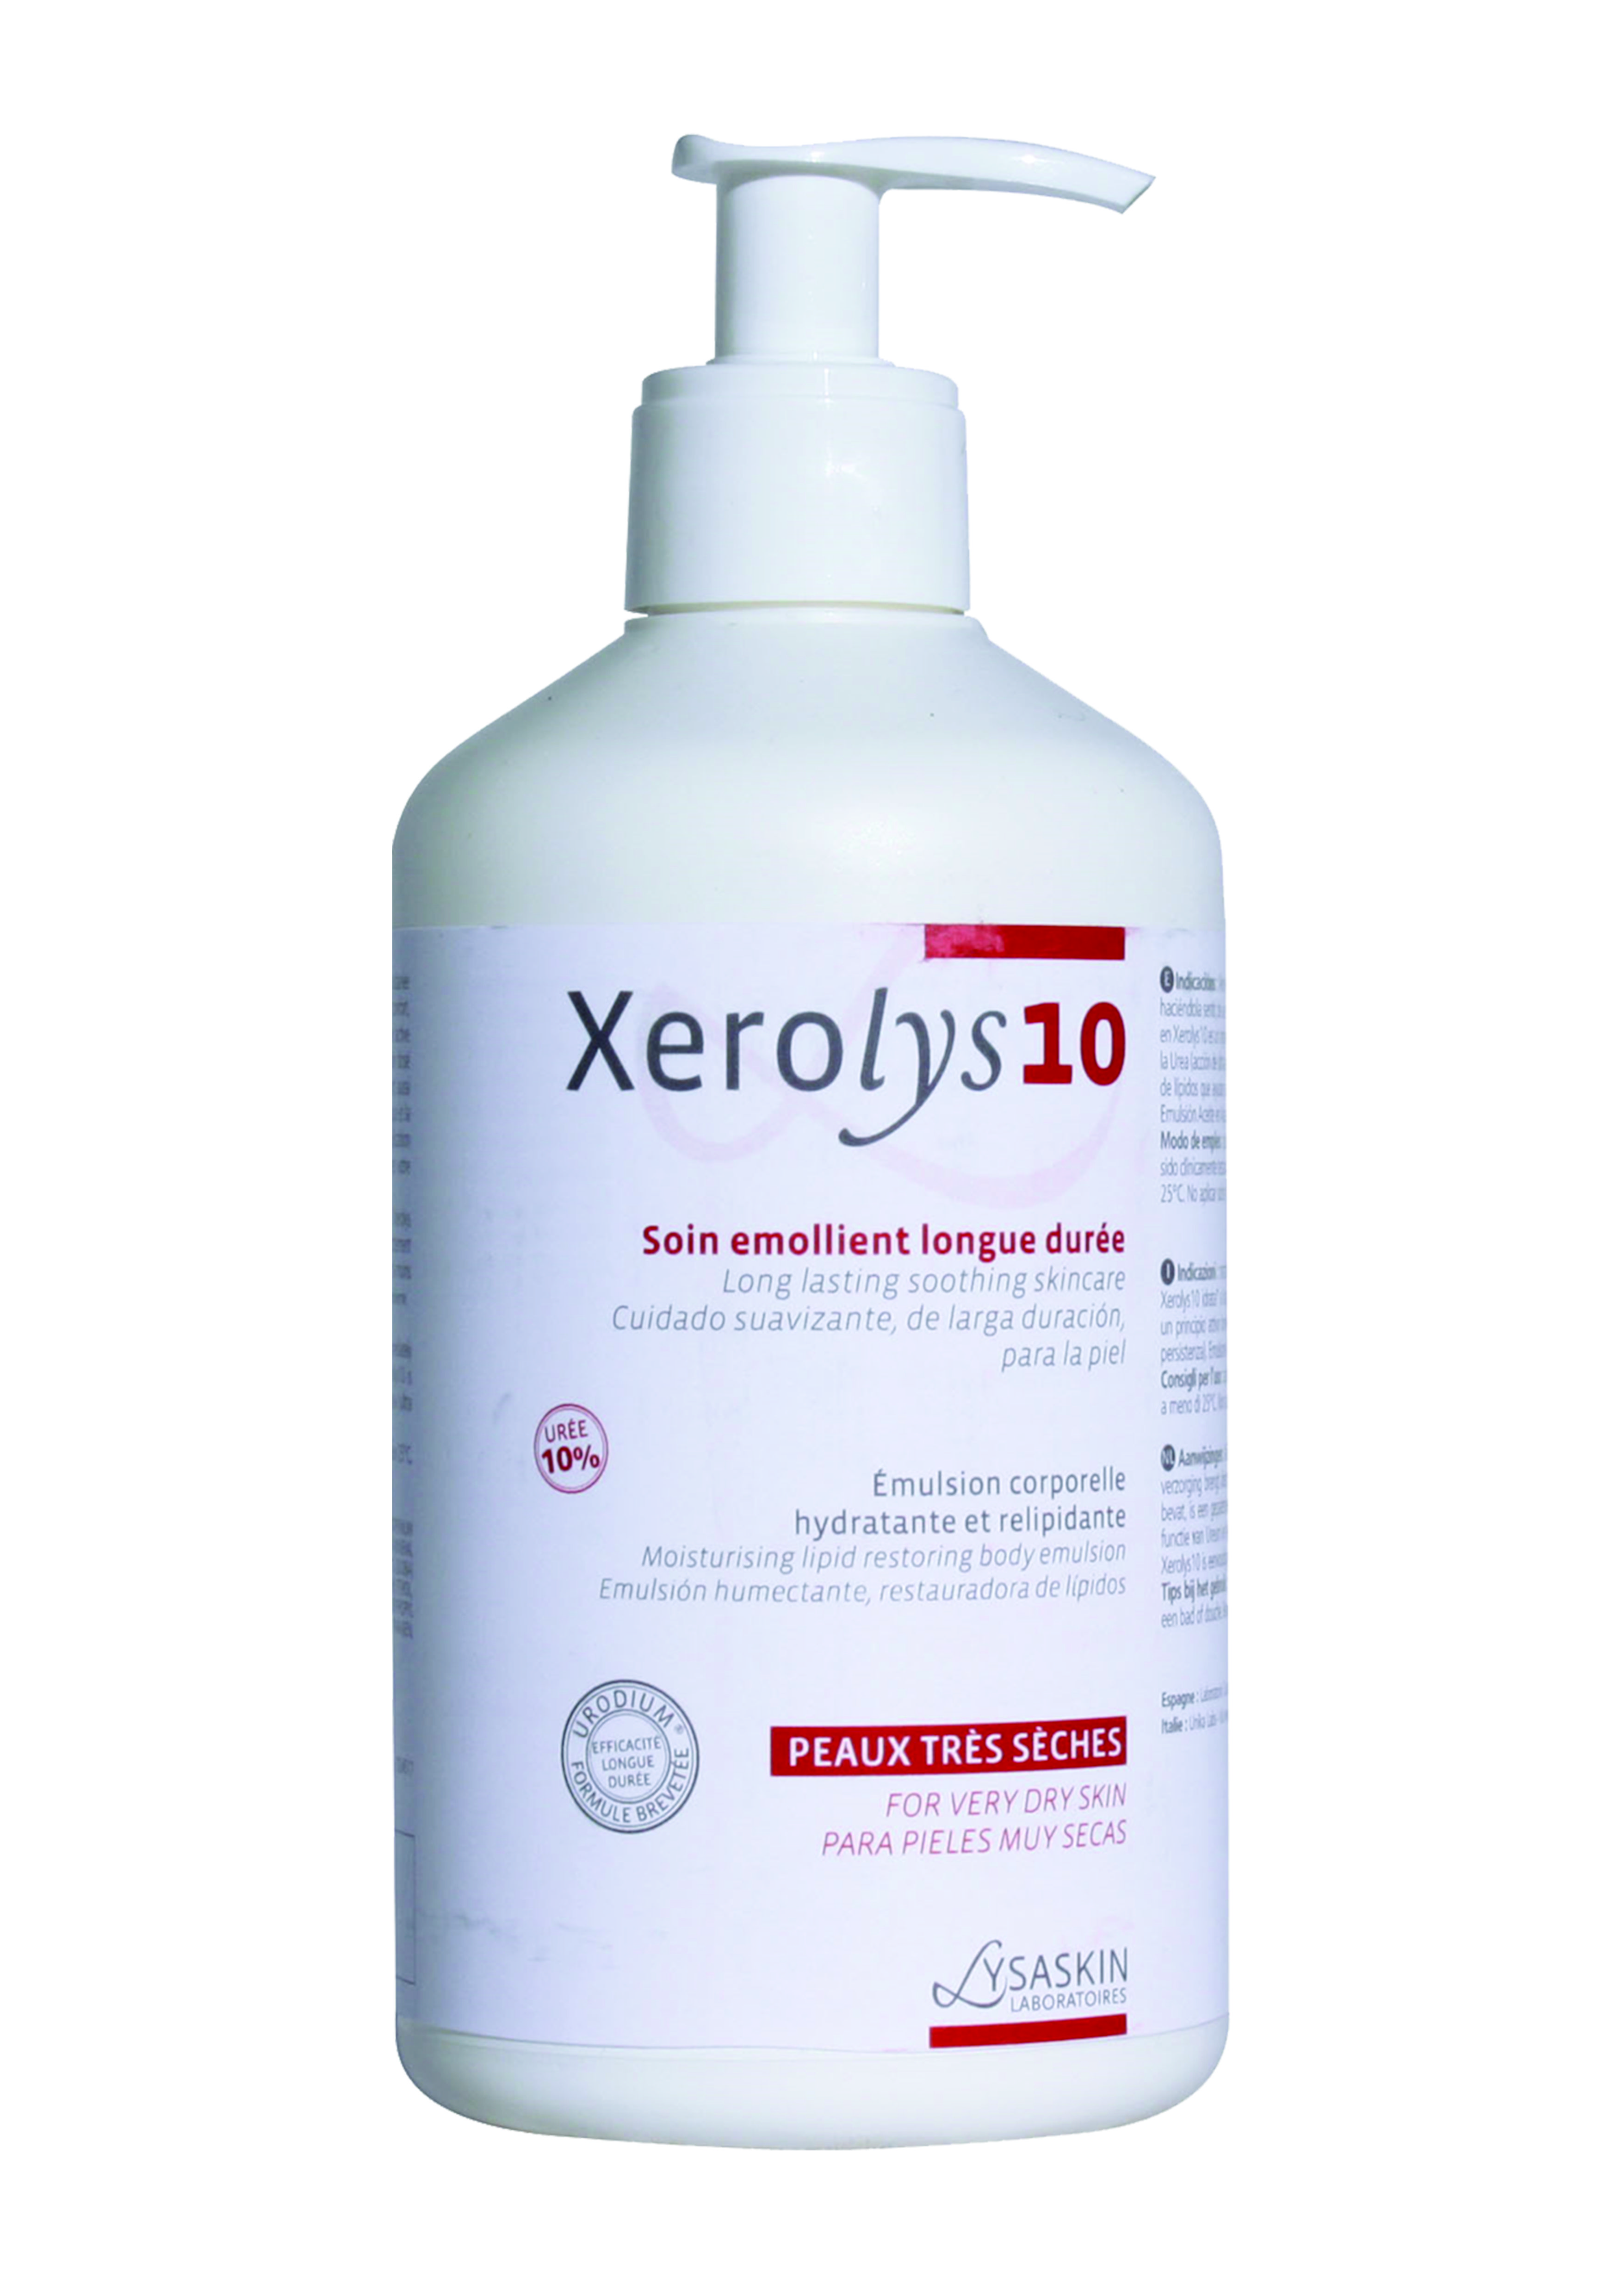 Lysaskin Xerolys 10 Emulsie hidratantă de lungă durată și relipidantă pentru corp